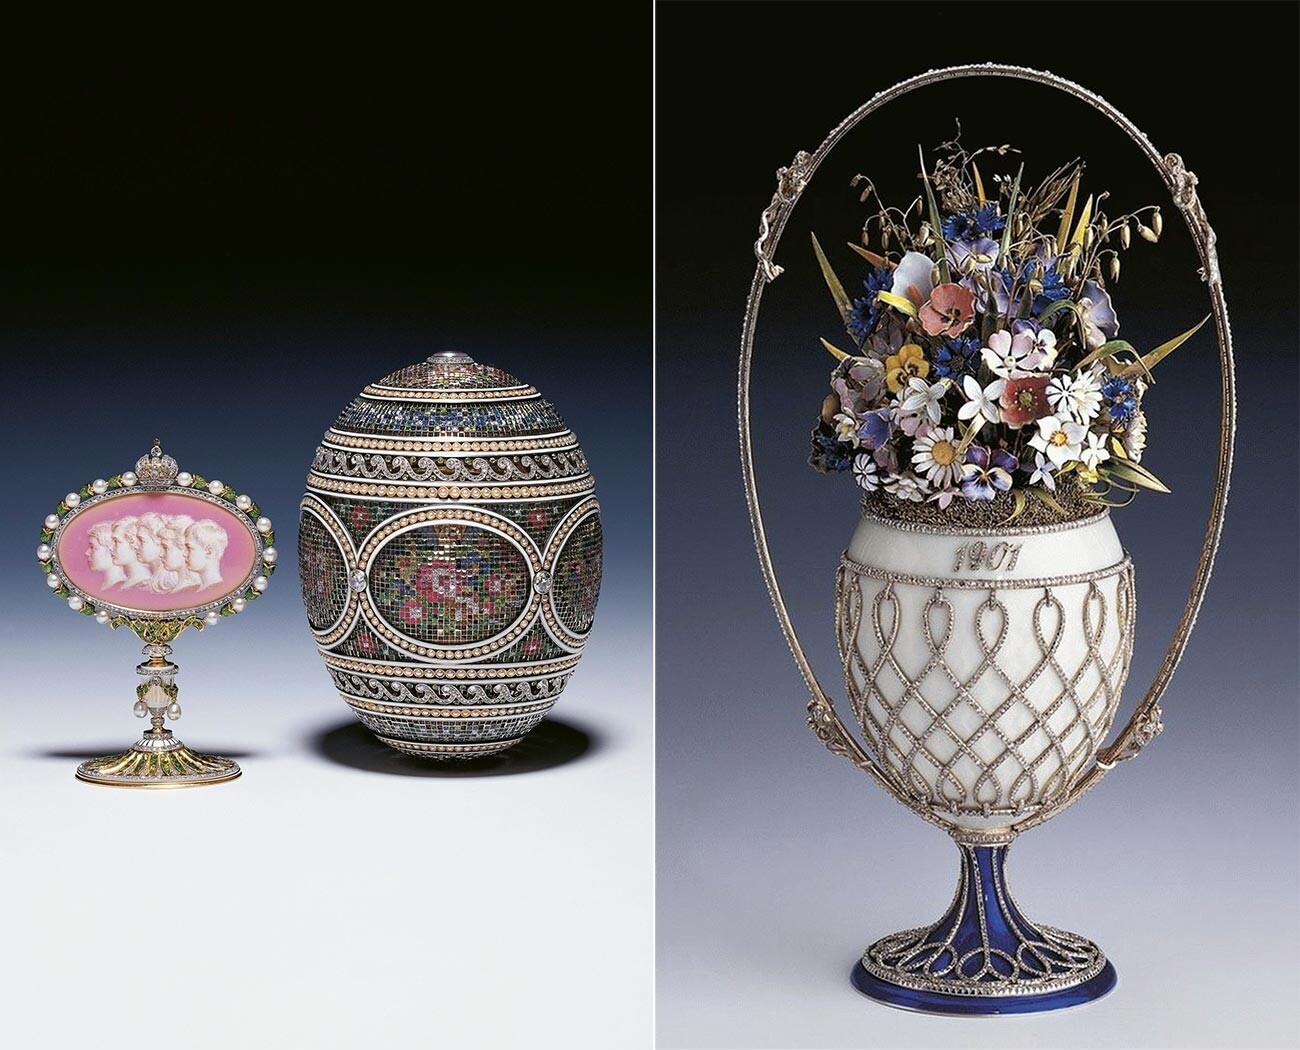 En 1930, l’œuf au Panier de fleurs sauvages et l’œuf en mosaïque ont été vendus à la famille royale britannique.